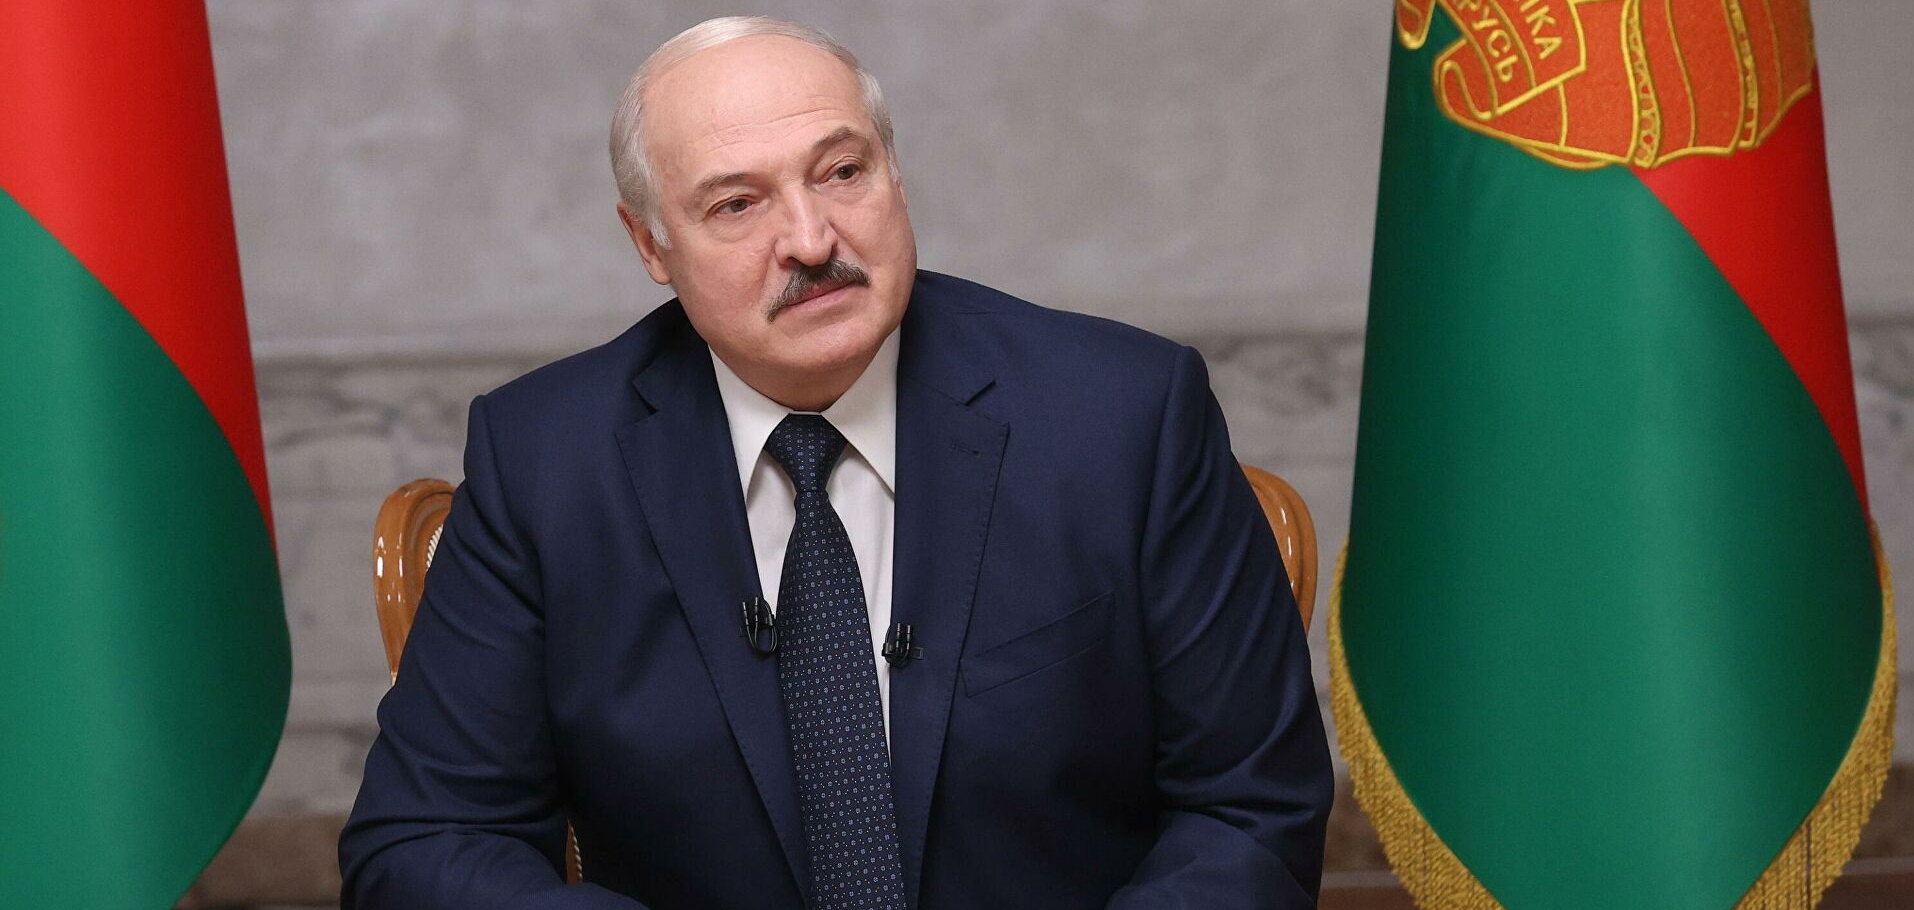 Лукашенко выступил с новыми обвинениями в адрес Зеленского: заявление пресс-службы